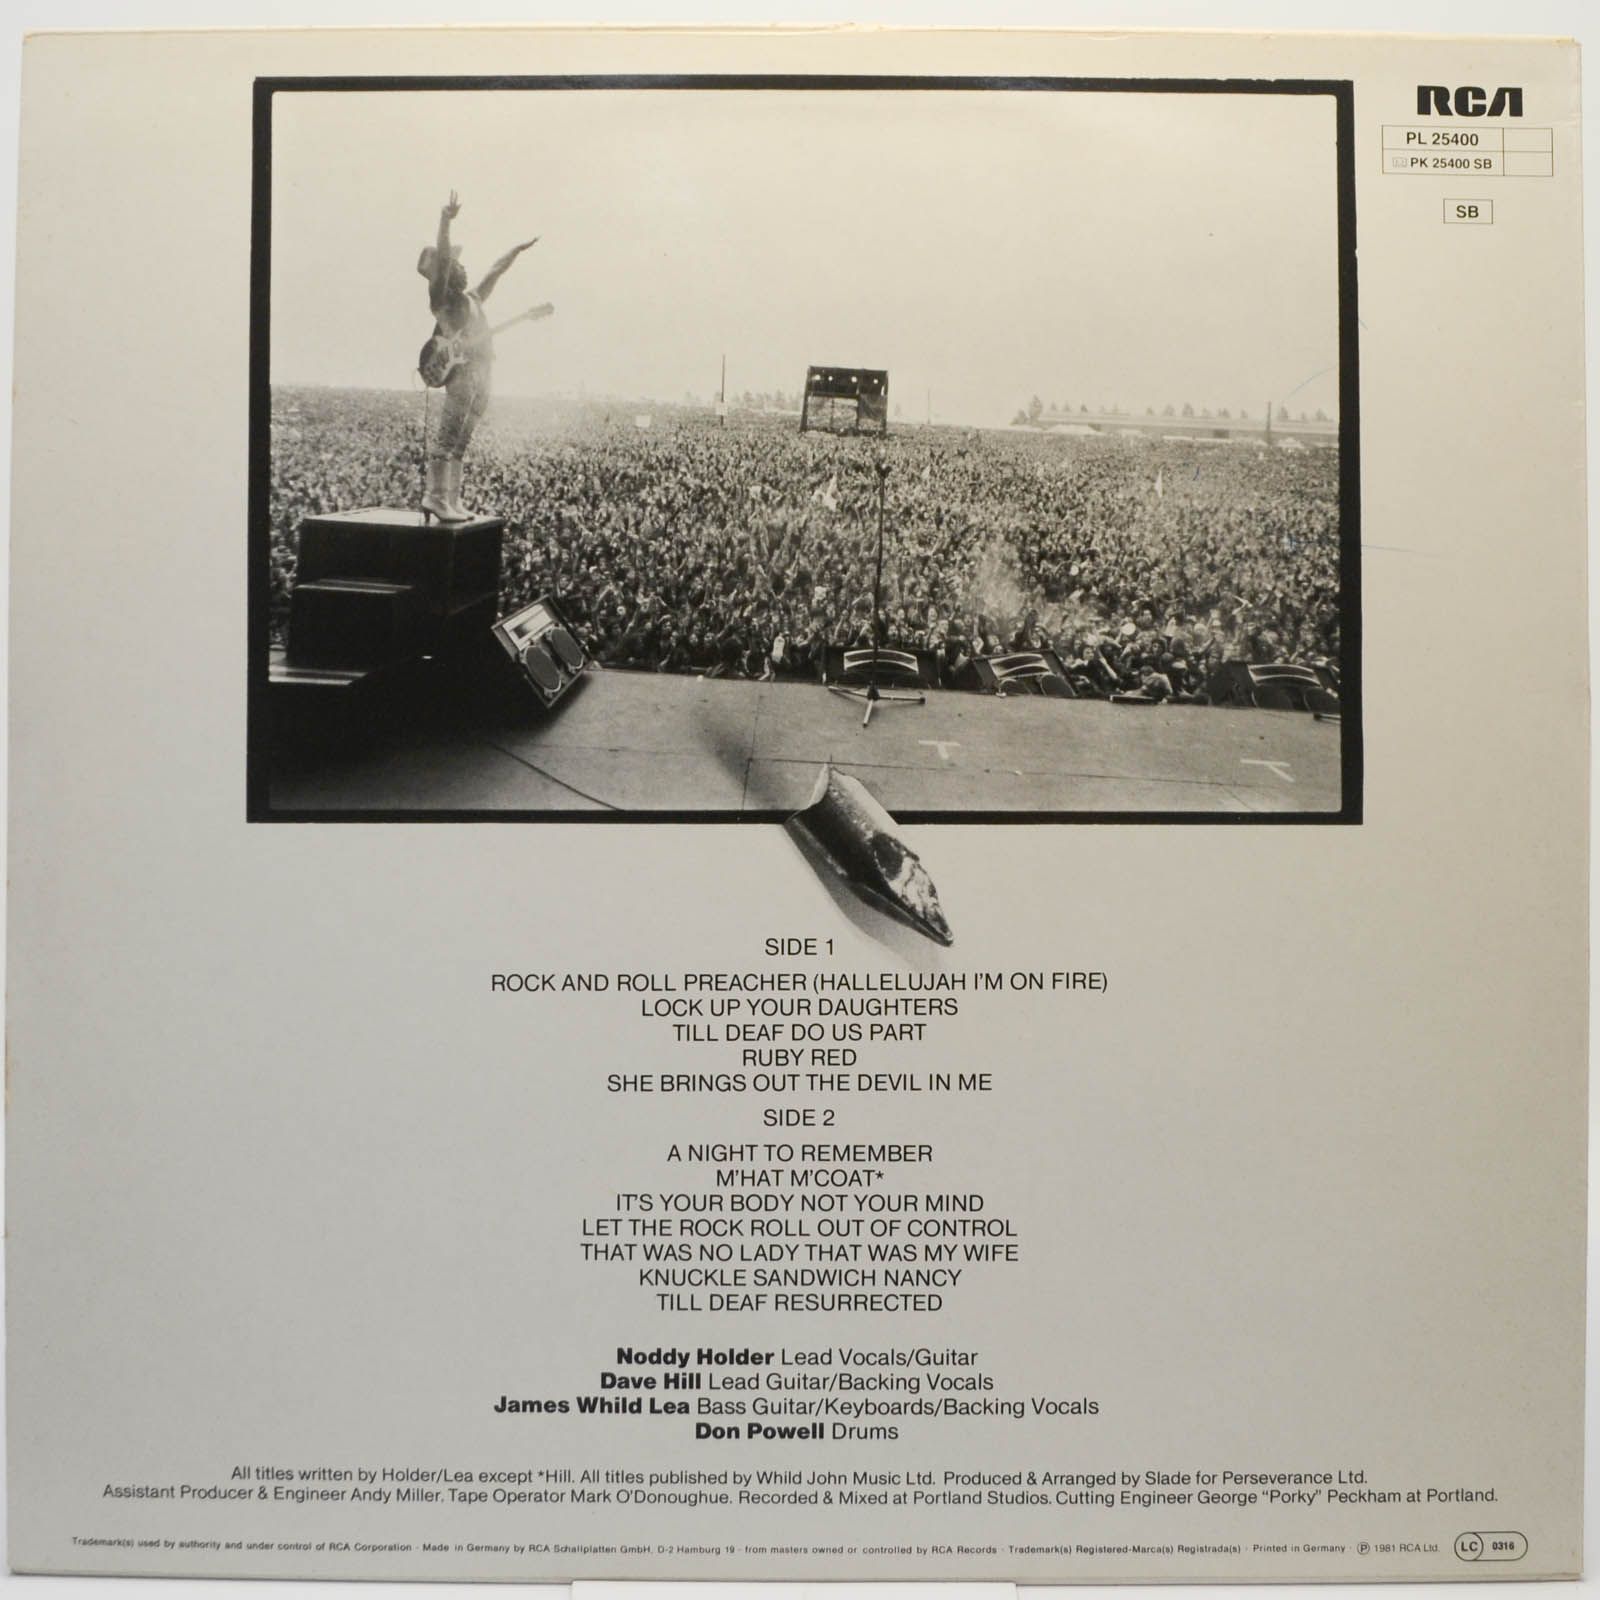 Slade — Till Deaf Do Us Part, 1981